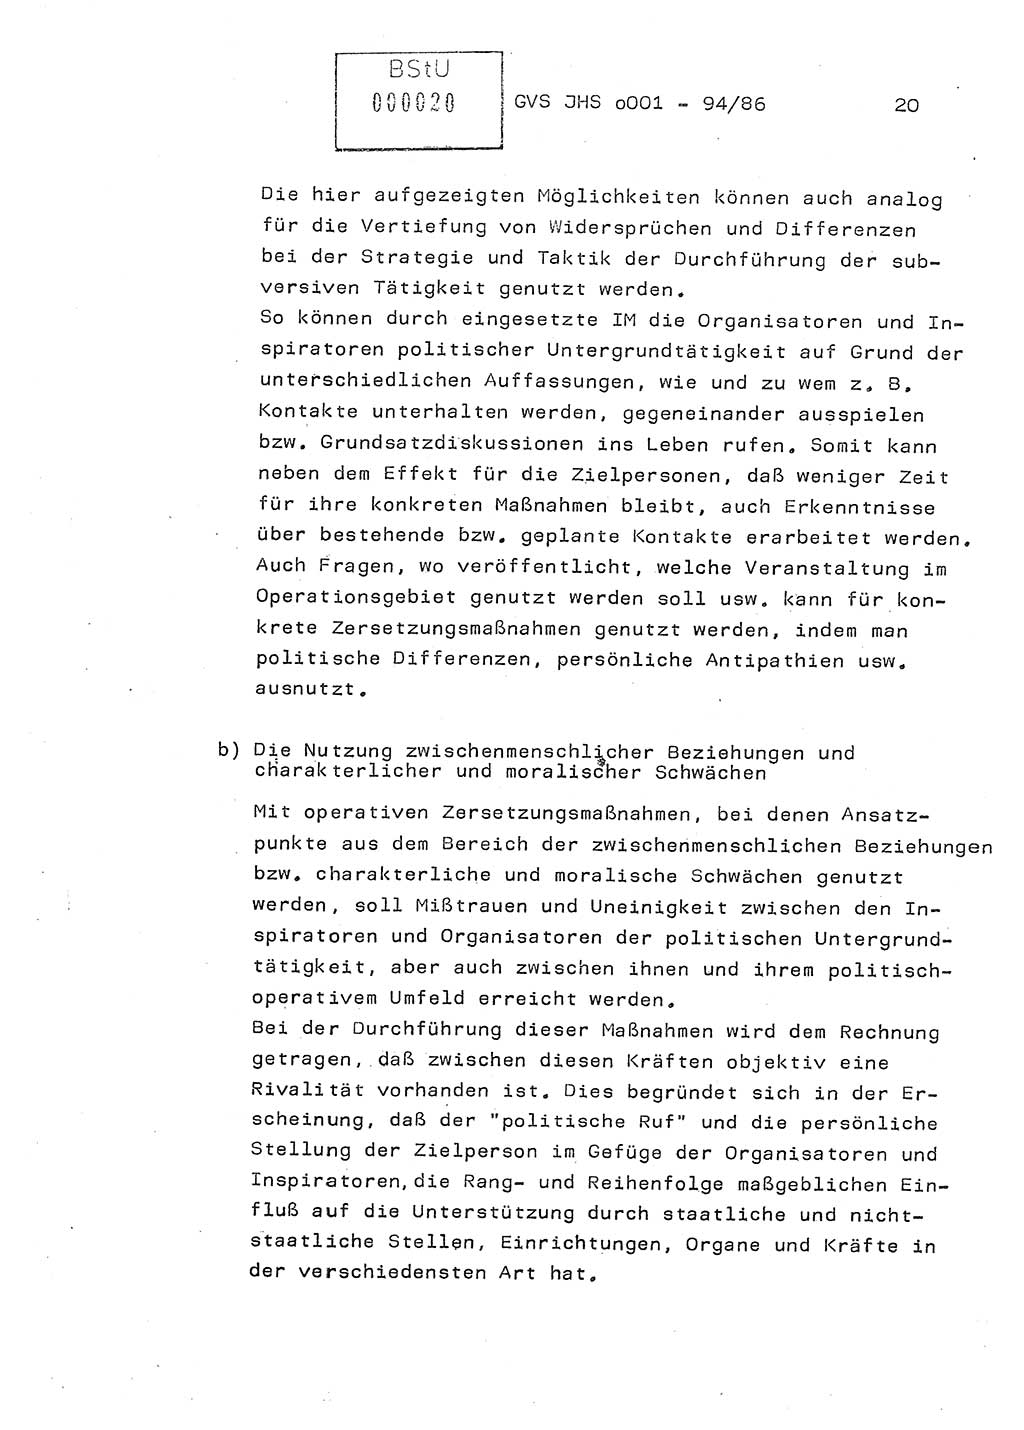 Diplomarbeit Oberleutnant Volkmar Pechmann (HA ⅩⅩ/5), Ministerium für Staatssicherheit (MfS) [Deutsche Demokratische Republik (DDR)], Juristische Hochschule (JHS), Geheime Verschlußsache (GVS) o001-94/86, Potsdam 1986, Blatt 20 (Dipl.-Arb. MfS DDR JHS GVS o001-94/86 1986, Bl. 20)